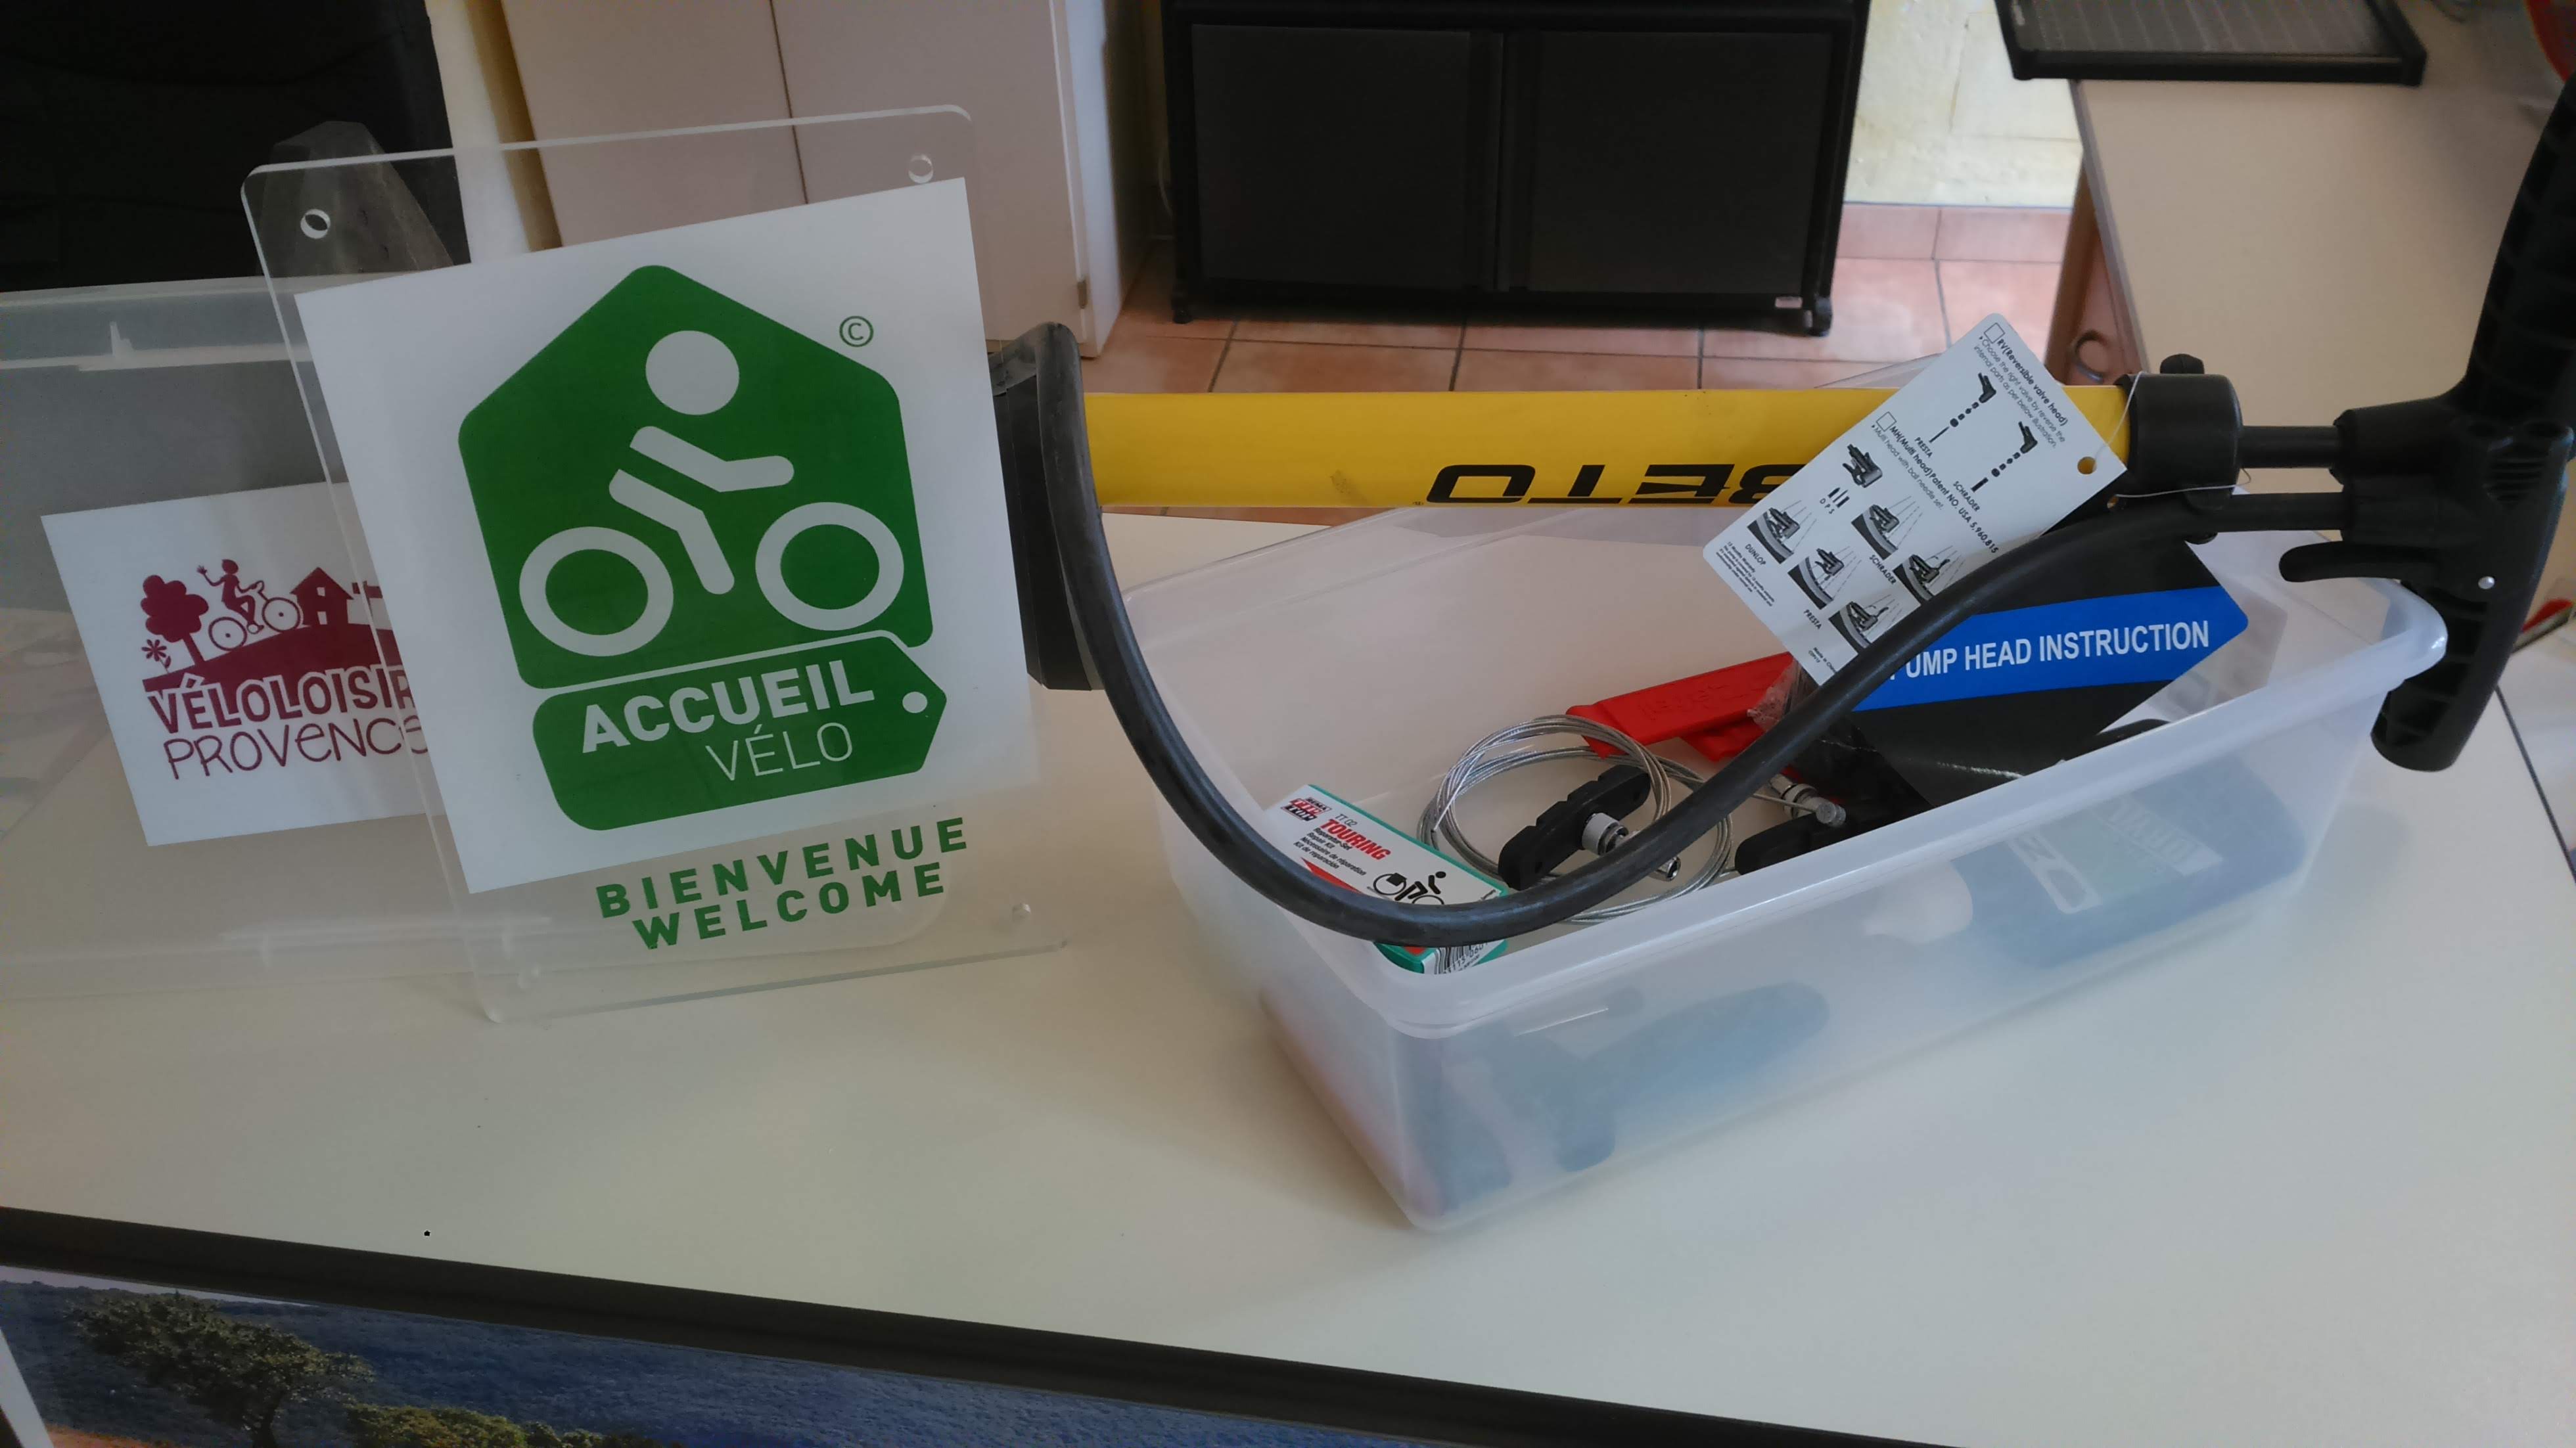 Pompe et kit de réparation - Accueil Vélo